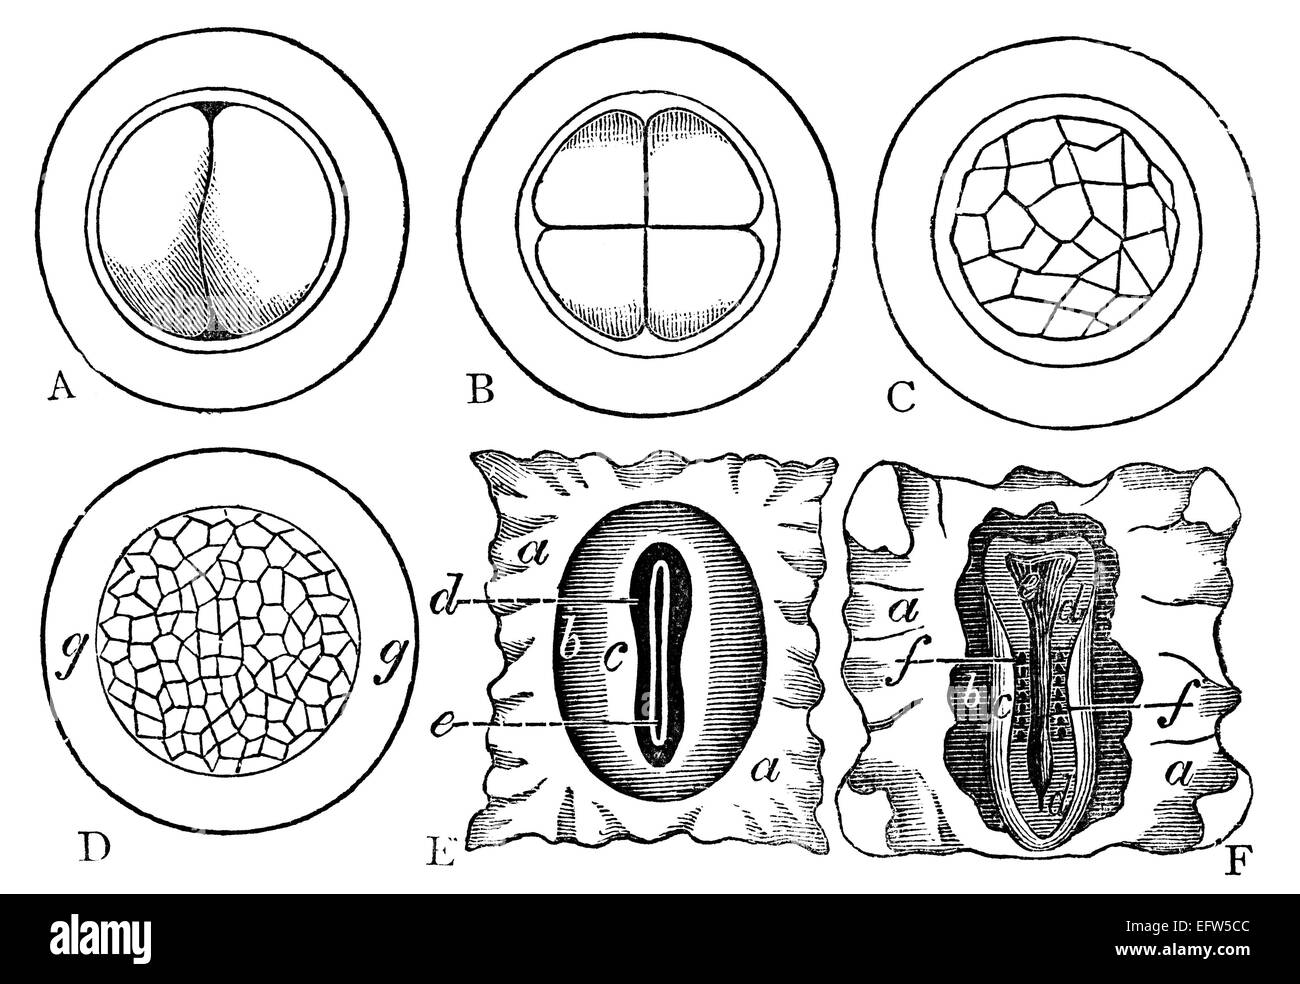 Incisione in stile vittoriano di un embrione di sviluppo. Restaurata digitalmente immagine da una metà del XIX secolo enciclopedia. Foto Stock